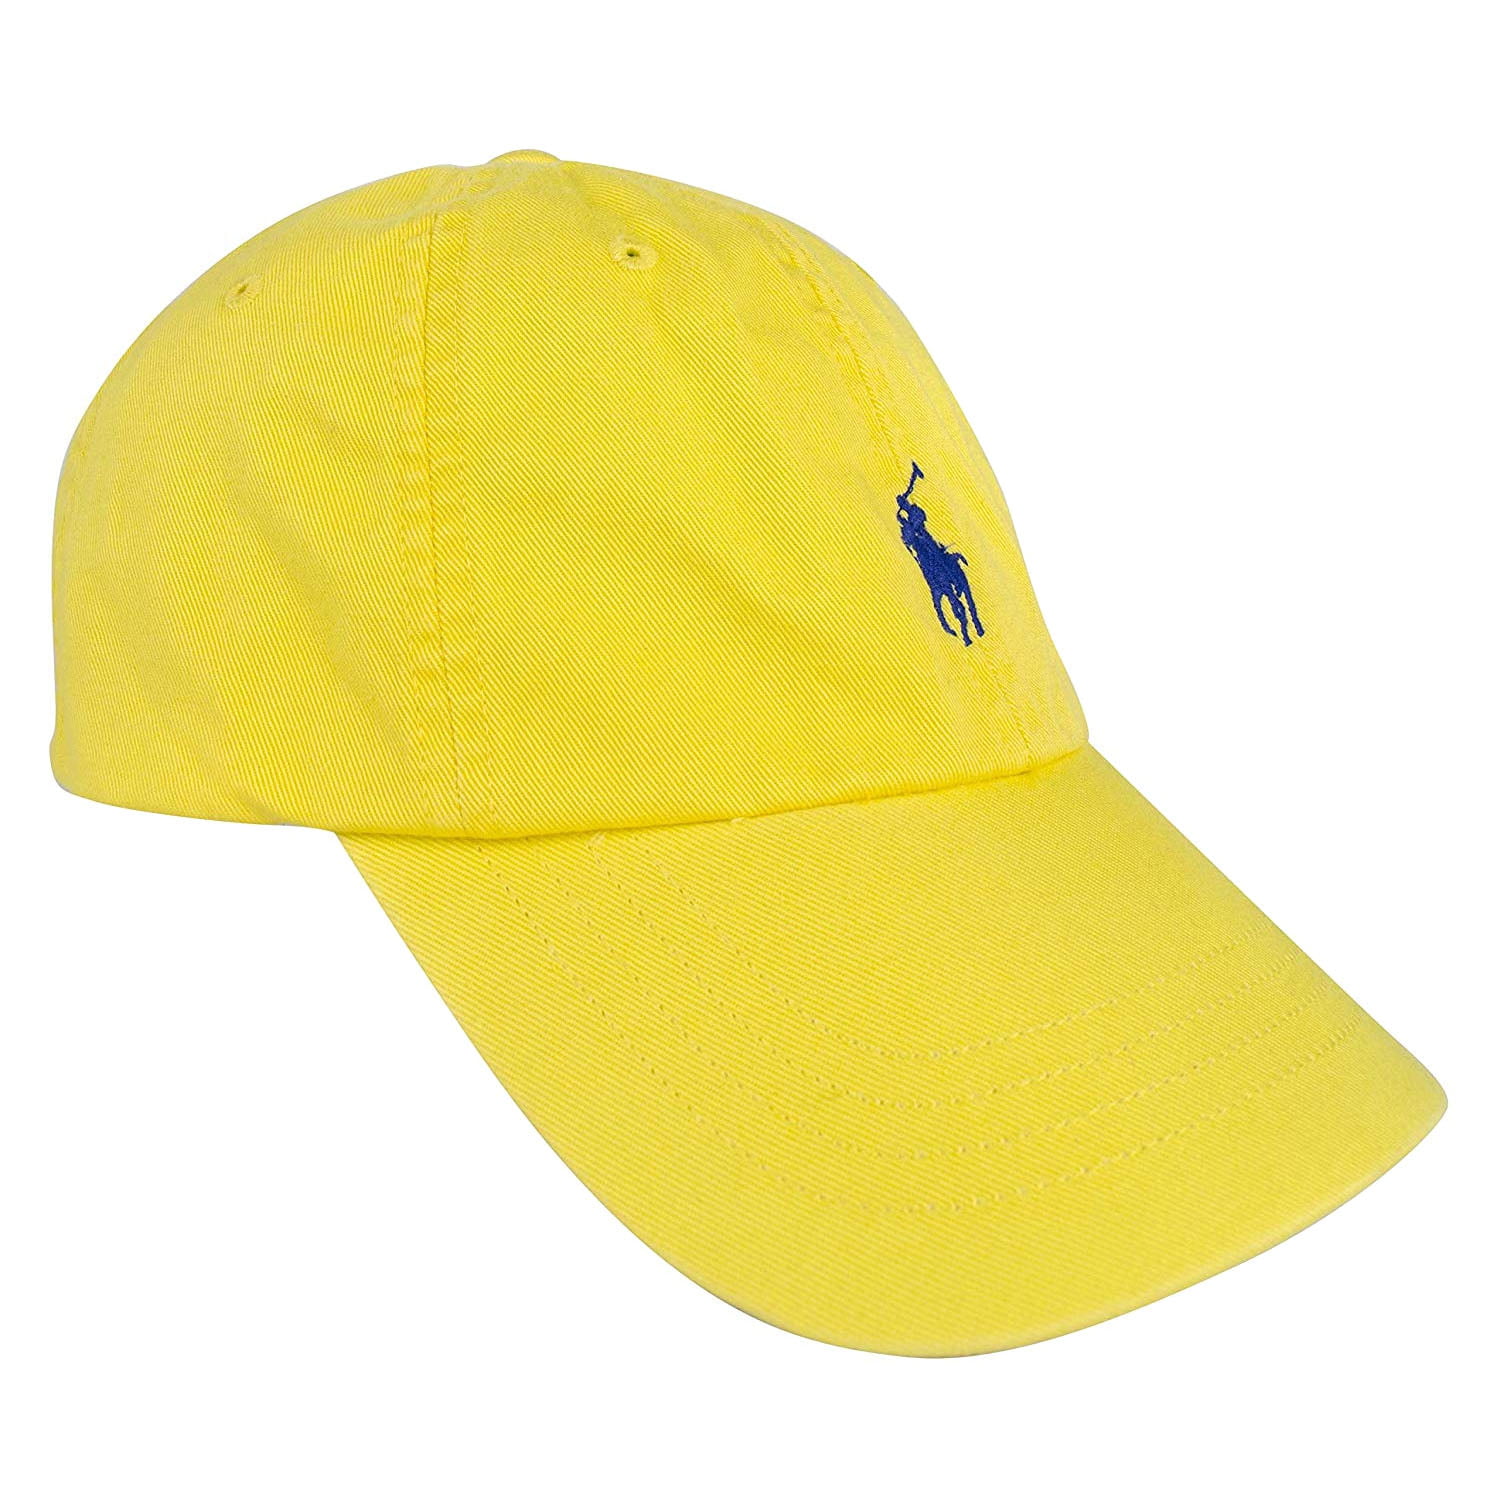 yellow ralph lauren hat